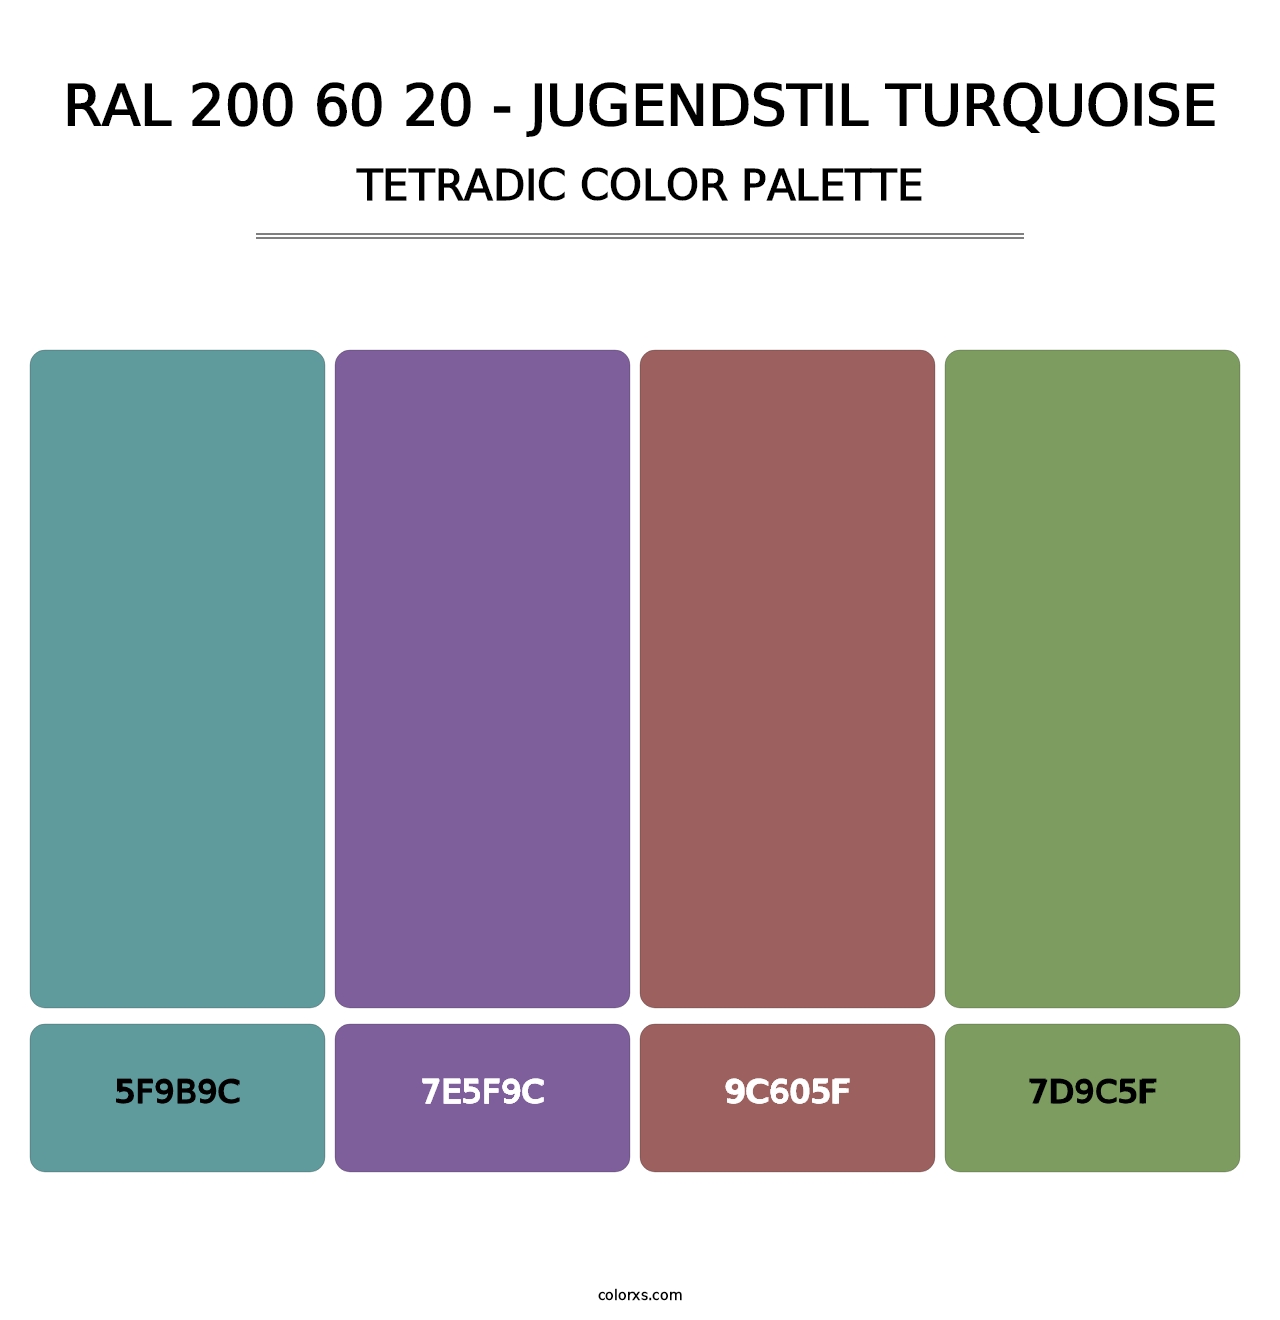 RAL 200 60 20 - Jugendstil Turquoise - Tetradic Color Palette